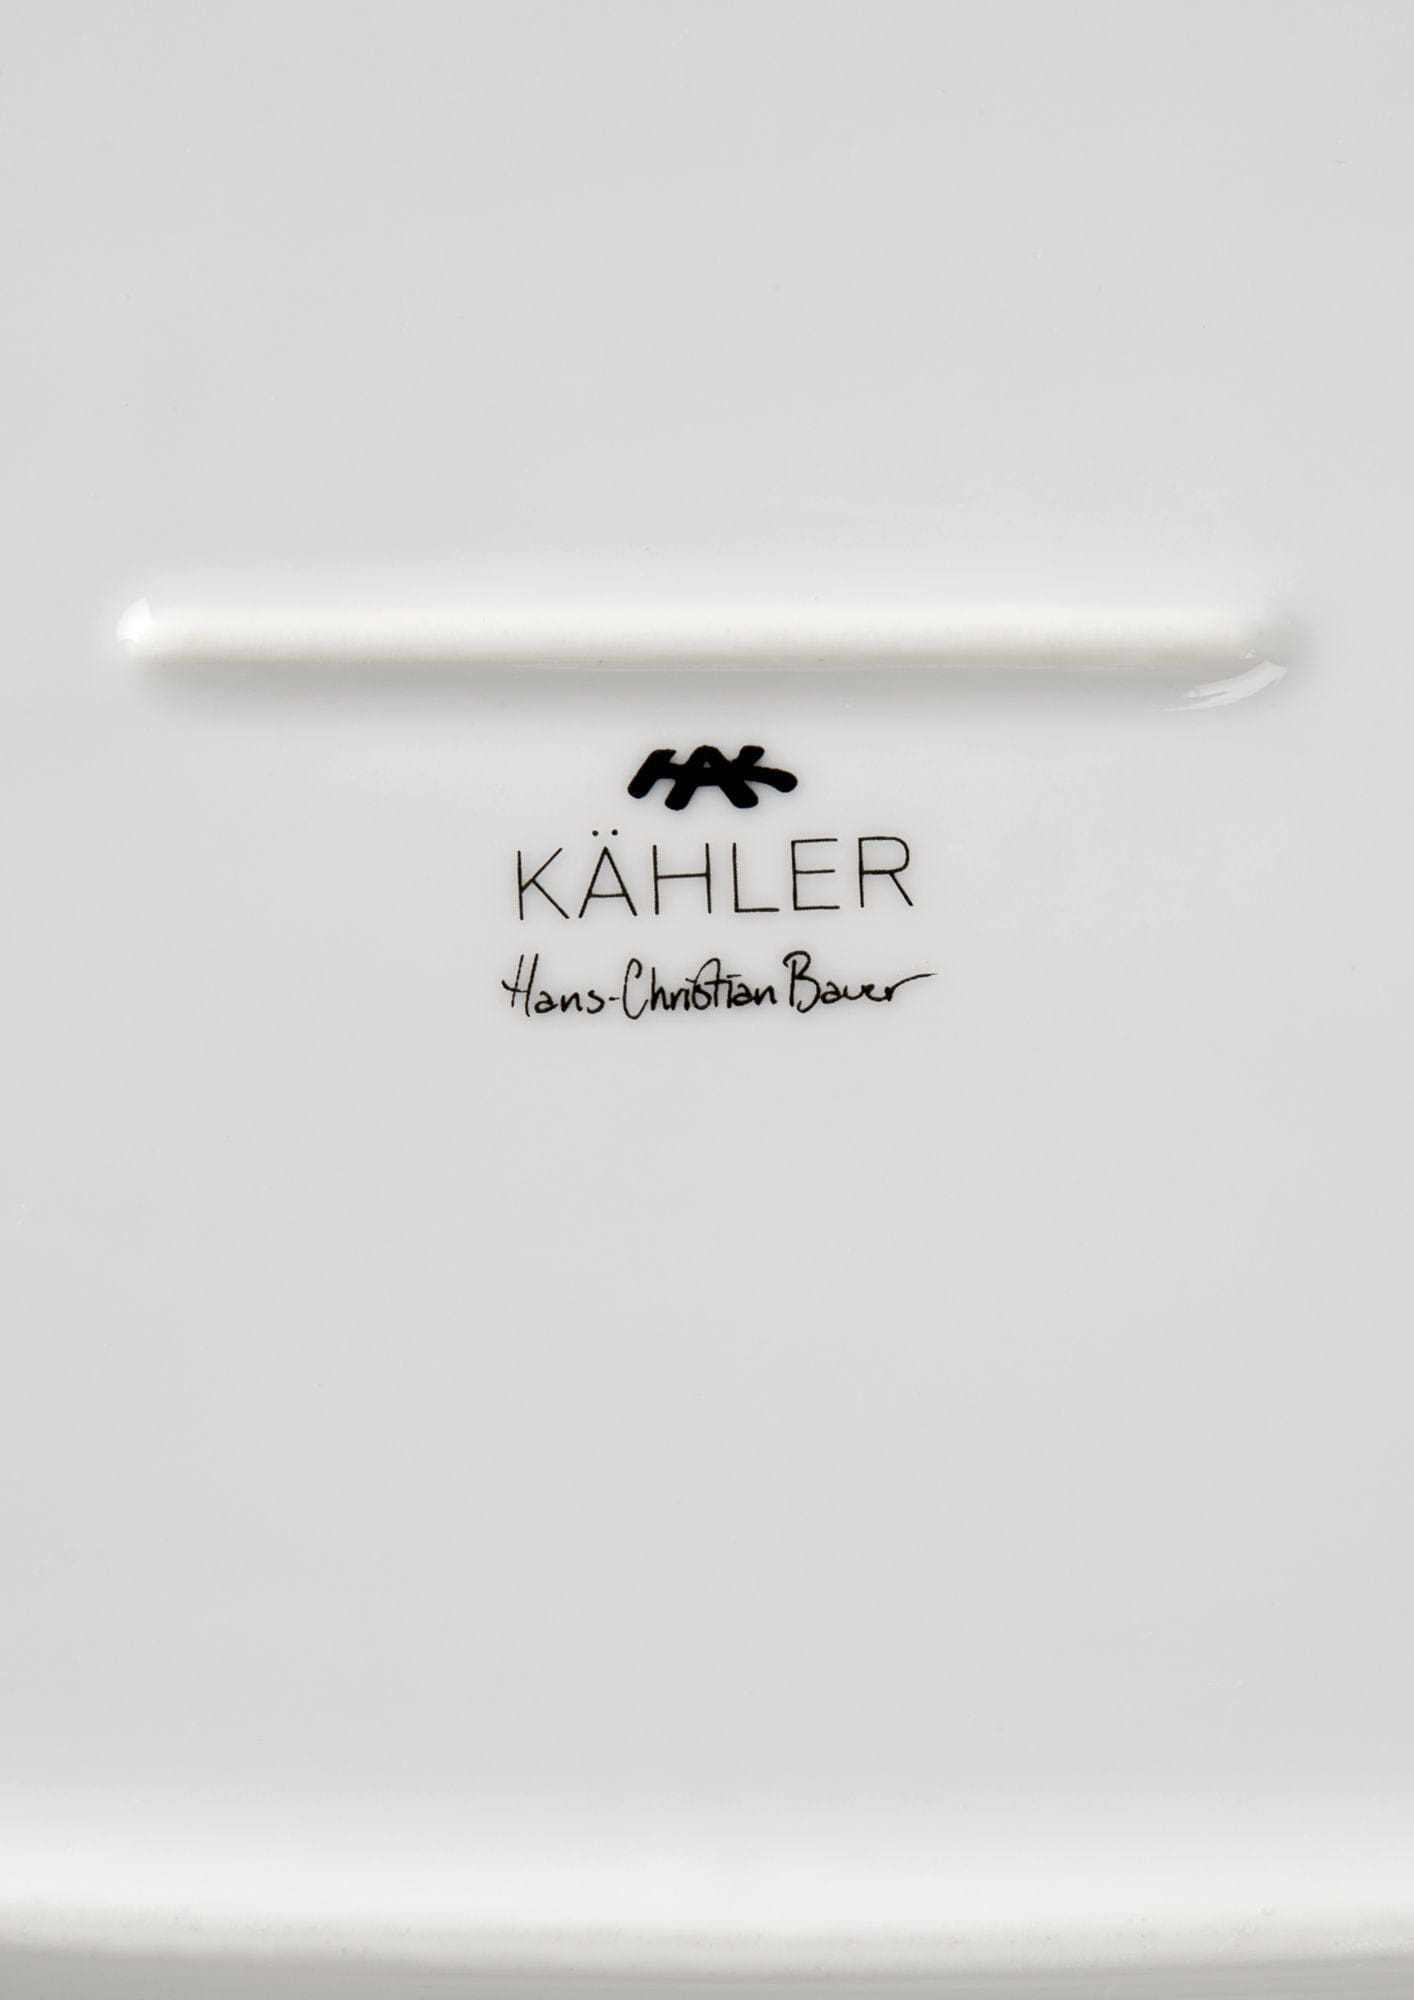 Kähler Hammershøi oval serveringsrätt 40x22,5 cm, vit